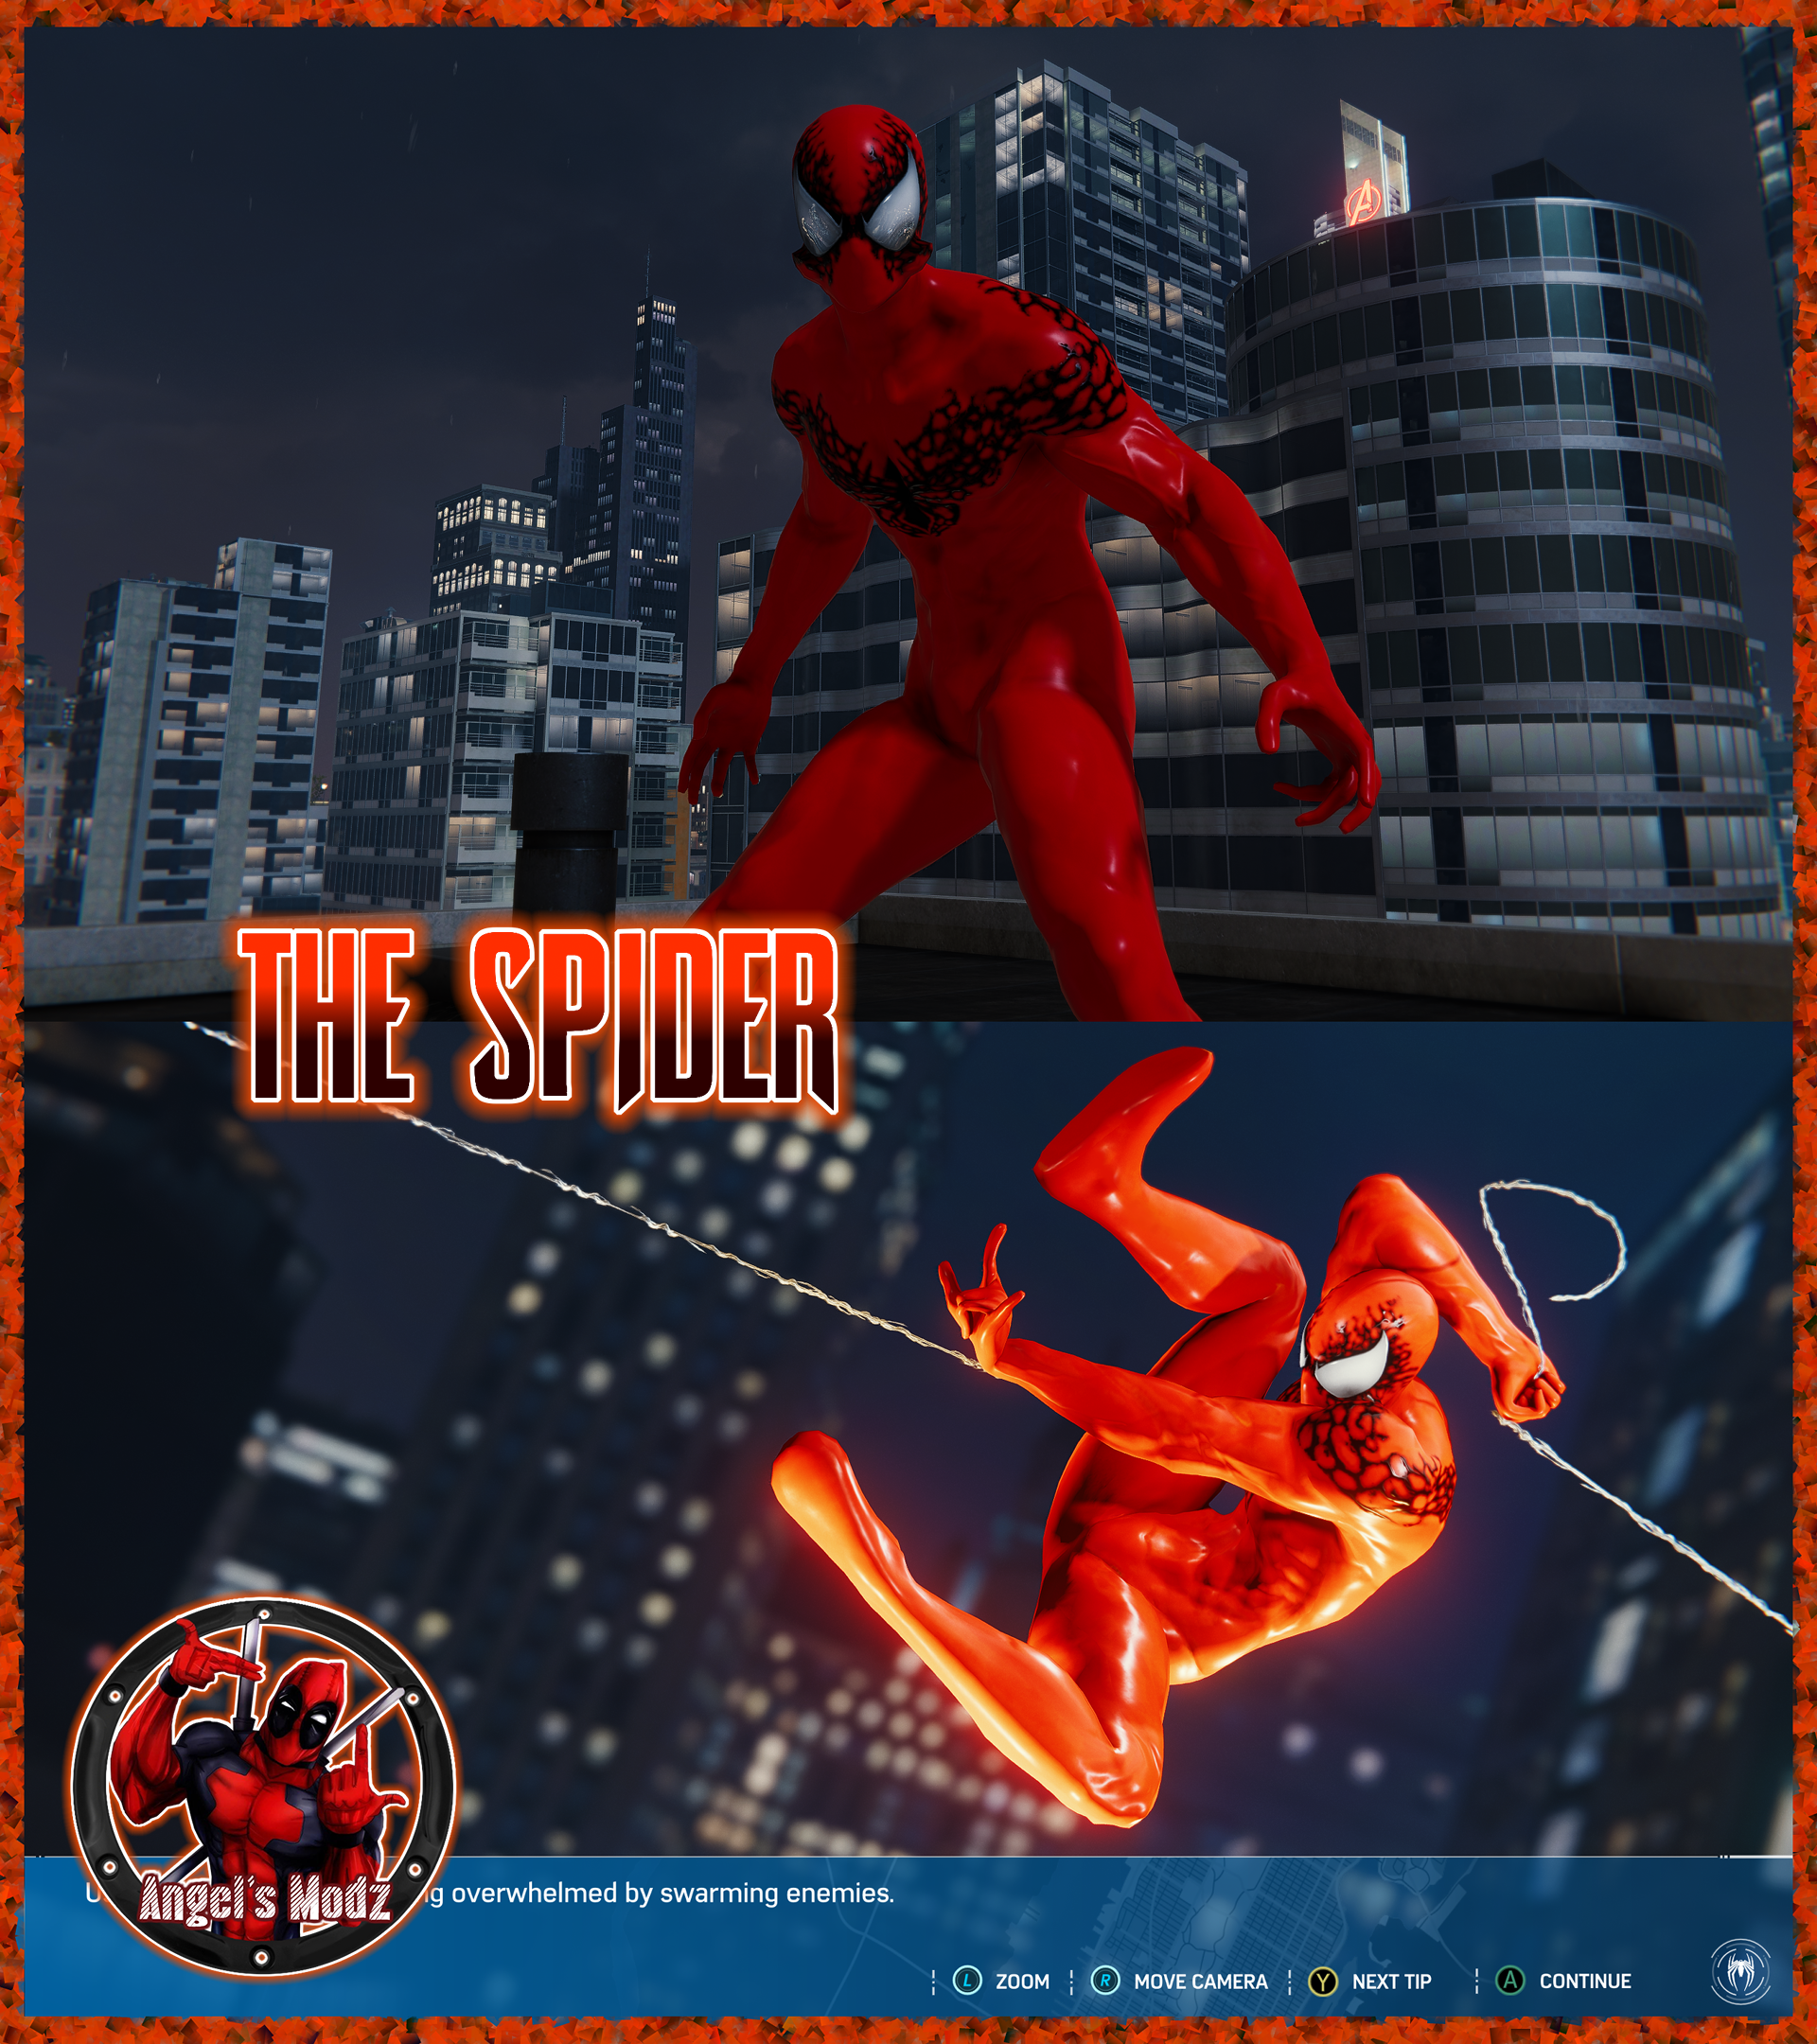 Spider-Man Web of Shadows - Ben Beta Skin Mod by Meganubis on DeviantArt